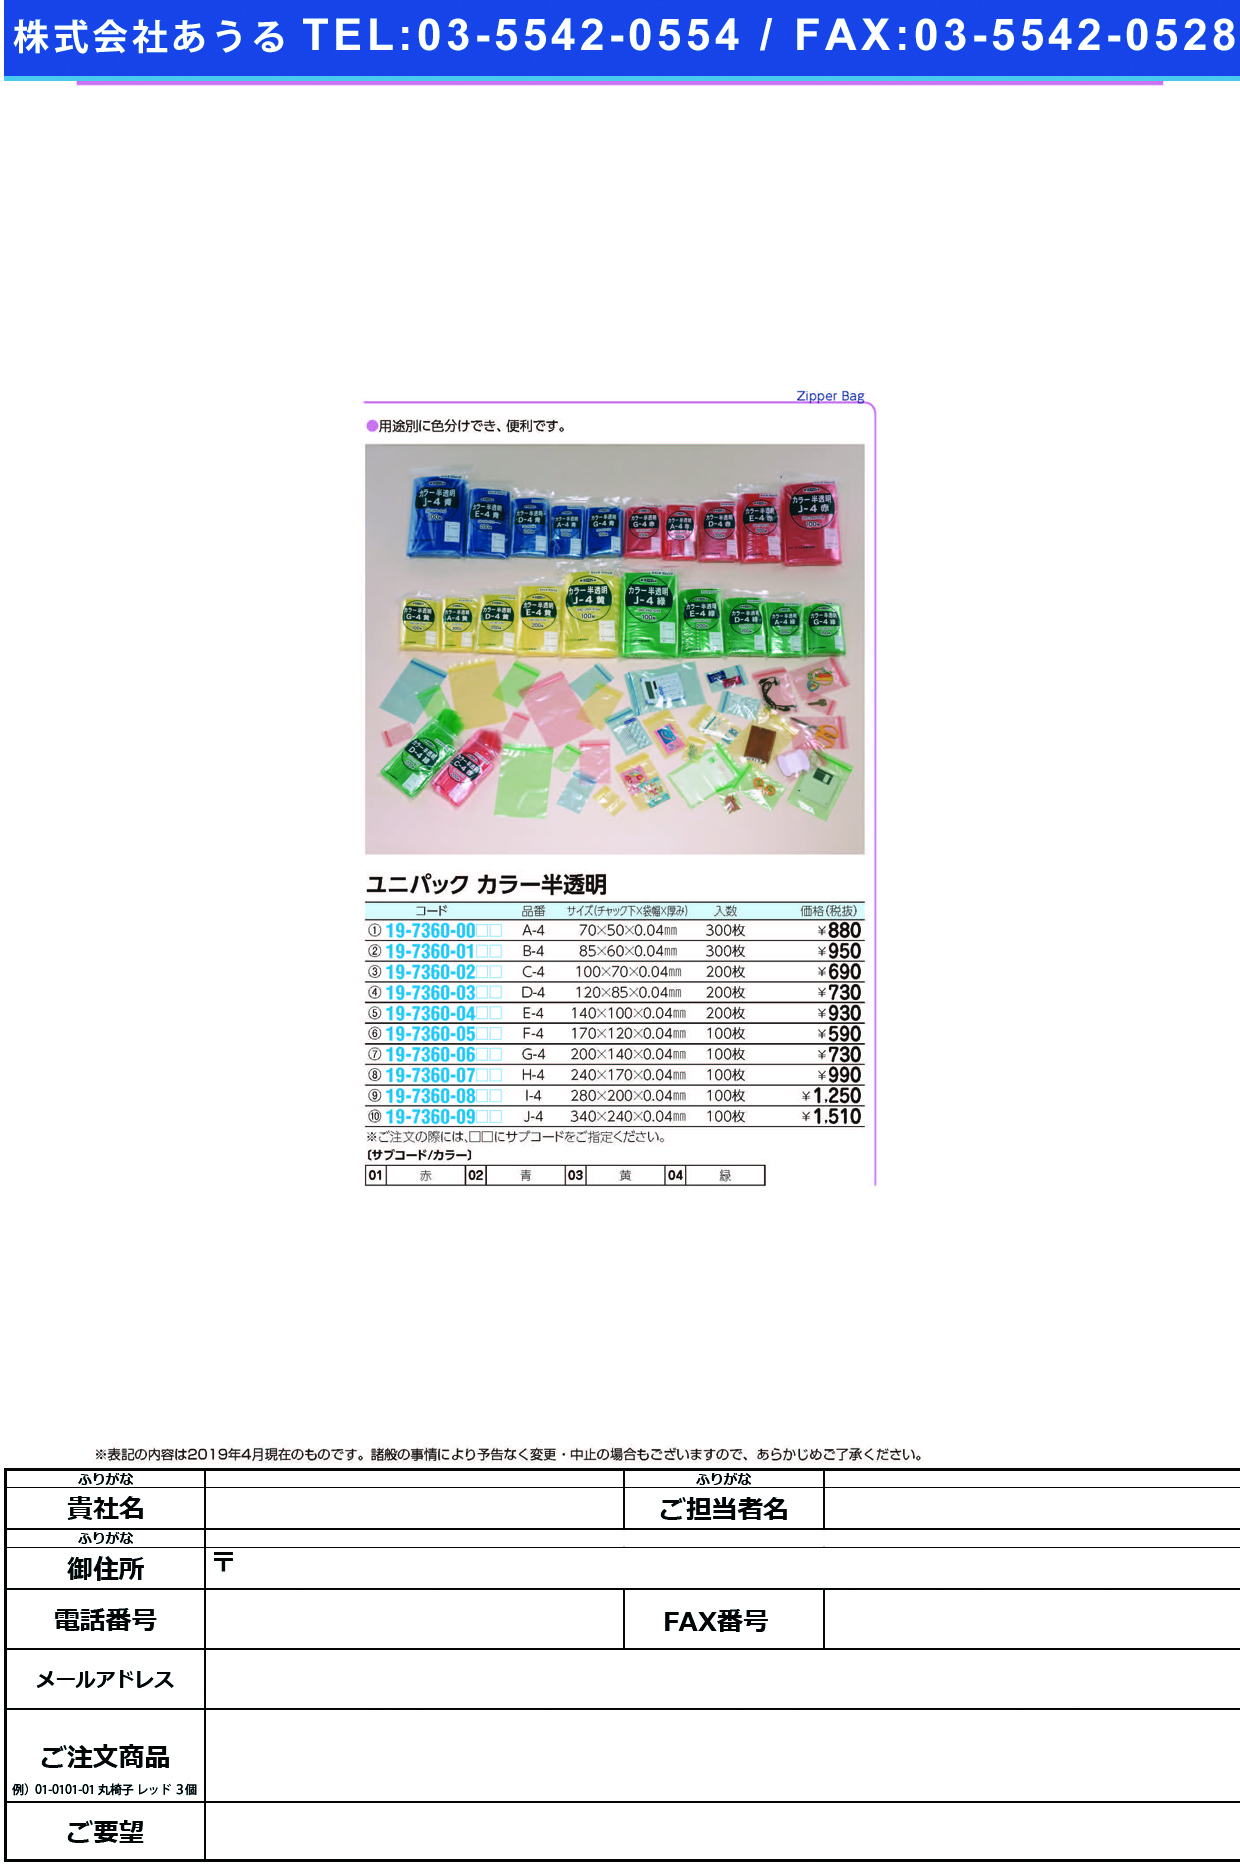 (19-7360-02)ユニパックカラー半透明 C-4(200ﾏｲｲﾘ) ﾕﾆﾊﾟｯｸｶﾗｰﾊﾝﾄｳﾒｲ 赤【1袋単位】【2019年カタログ商品】